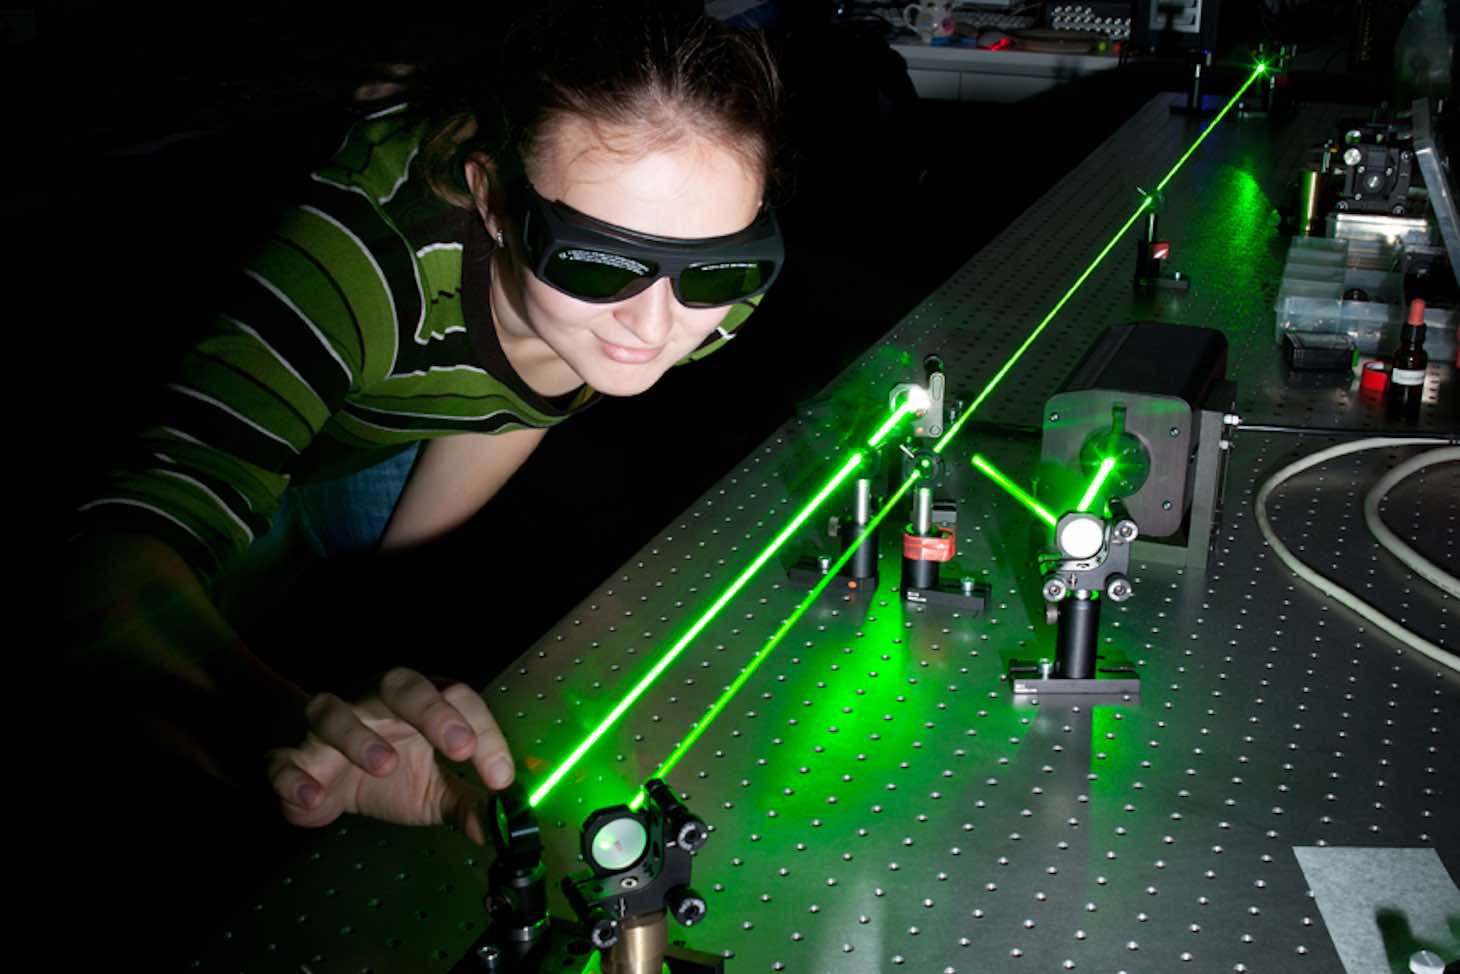 Etudiante devant un banc optique avec laser